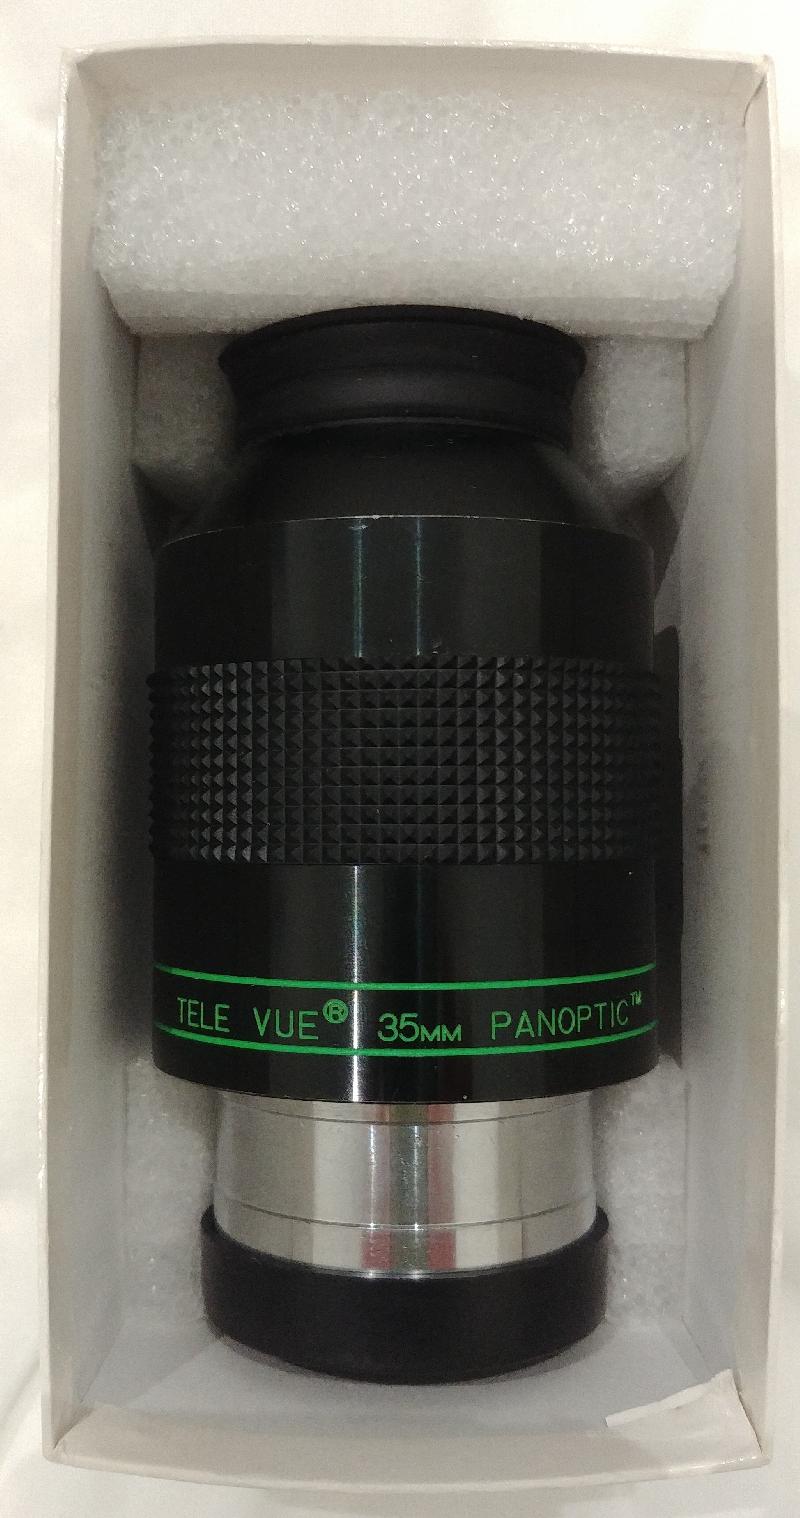 Televue Panoptic 35mm